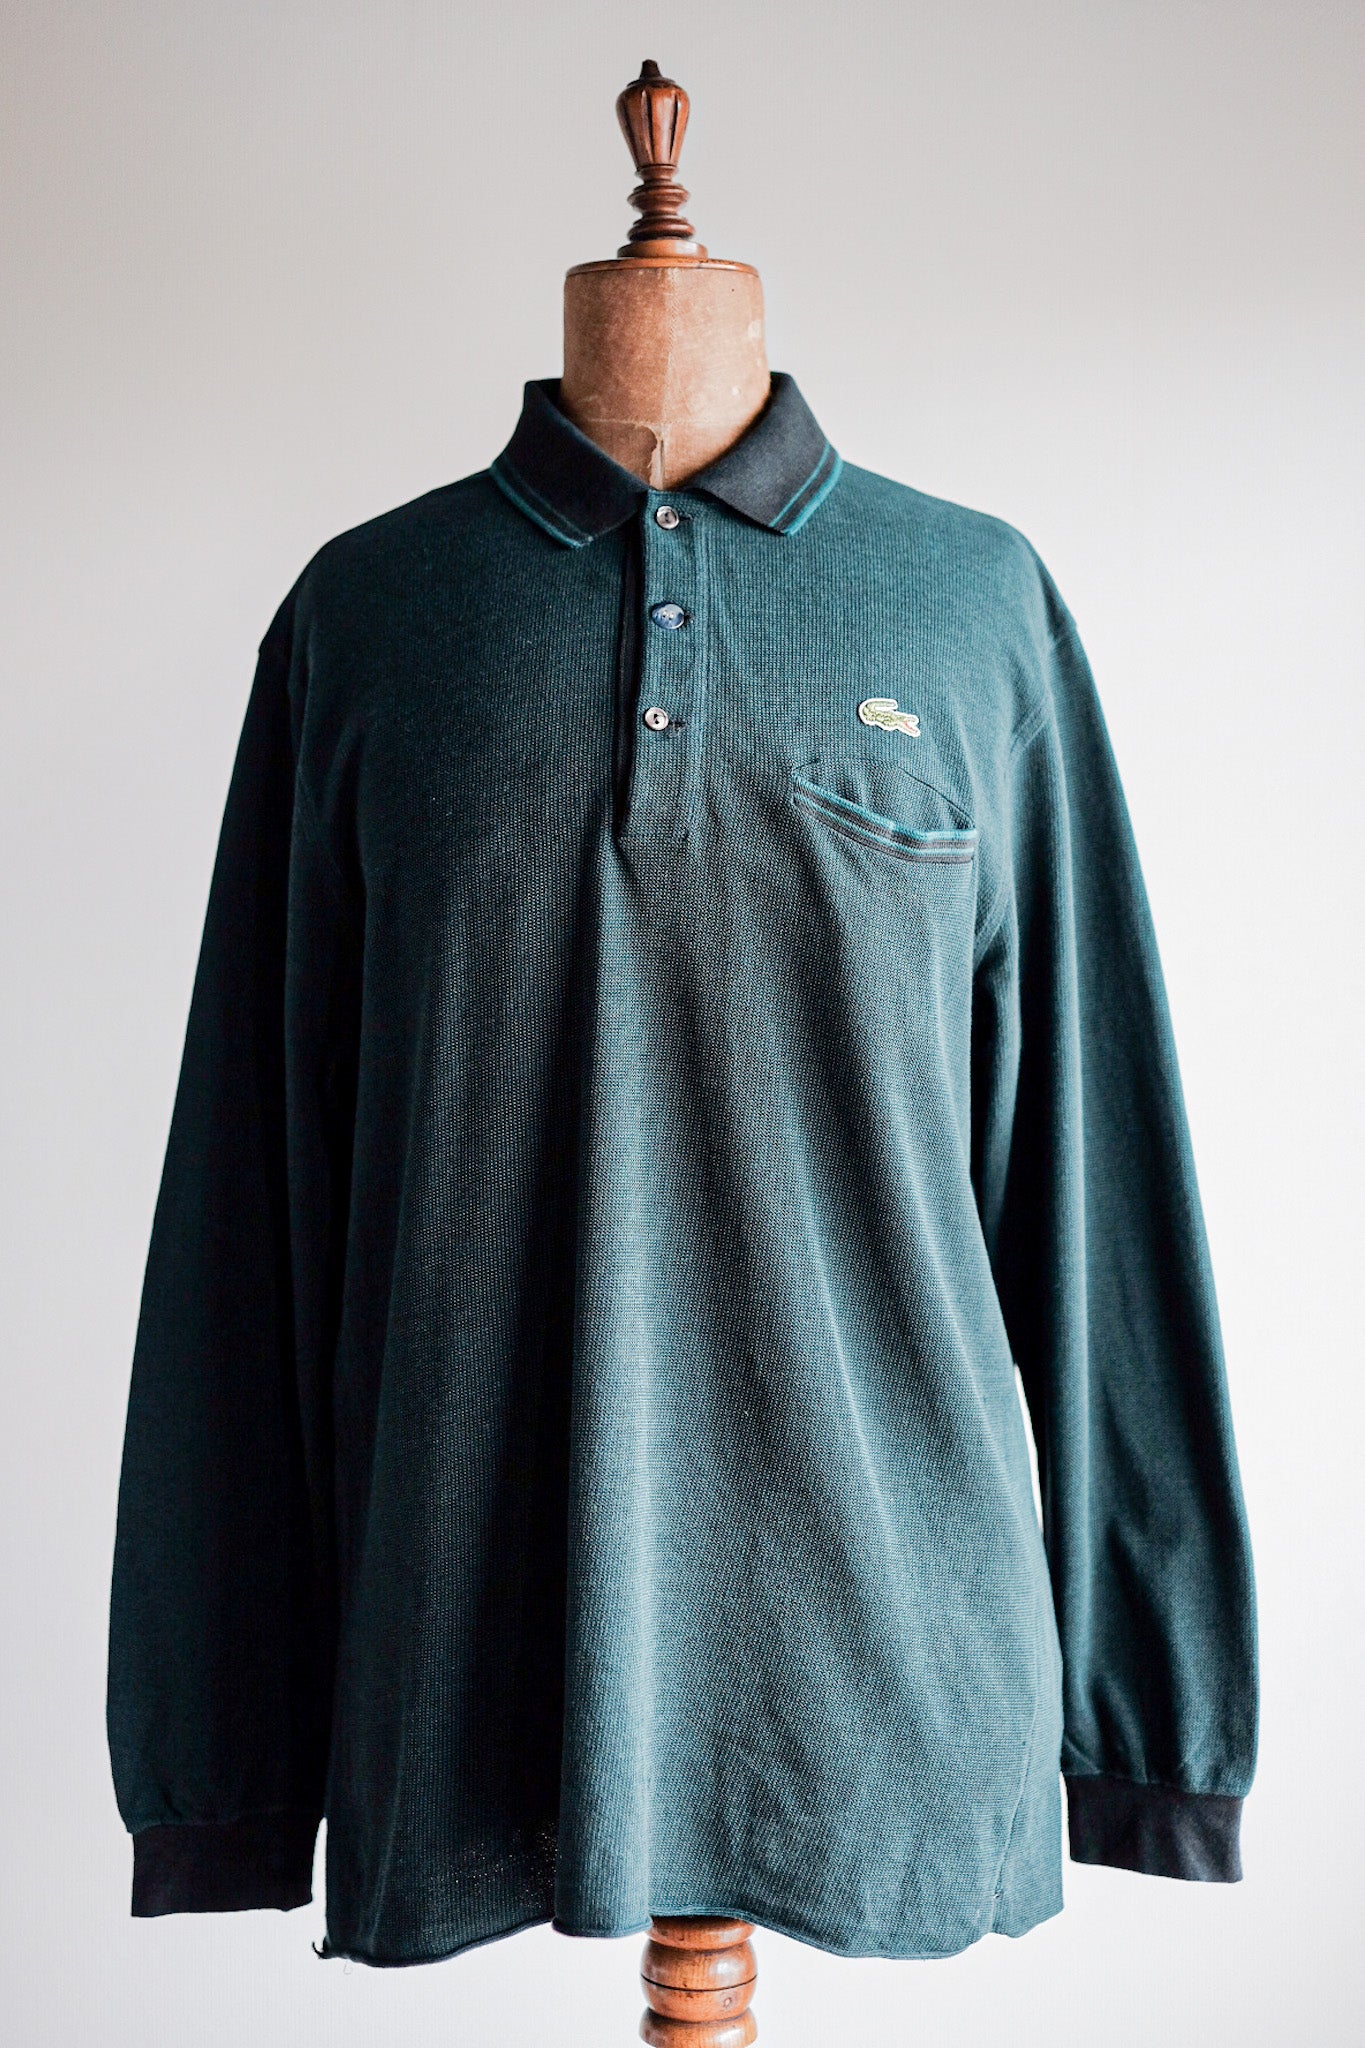 [〜80年代]顏色的lacoste l/s polo襯衫尺寸。5“多色”